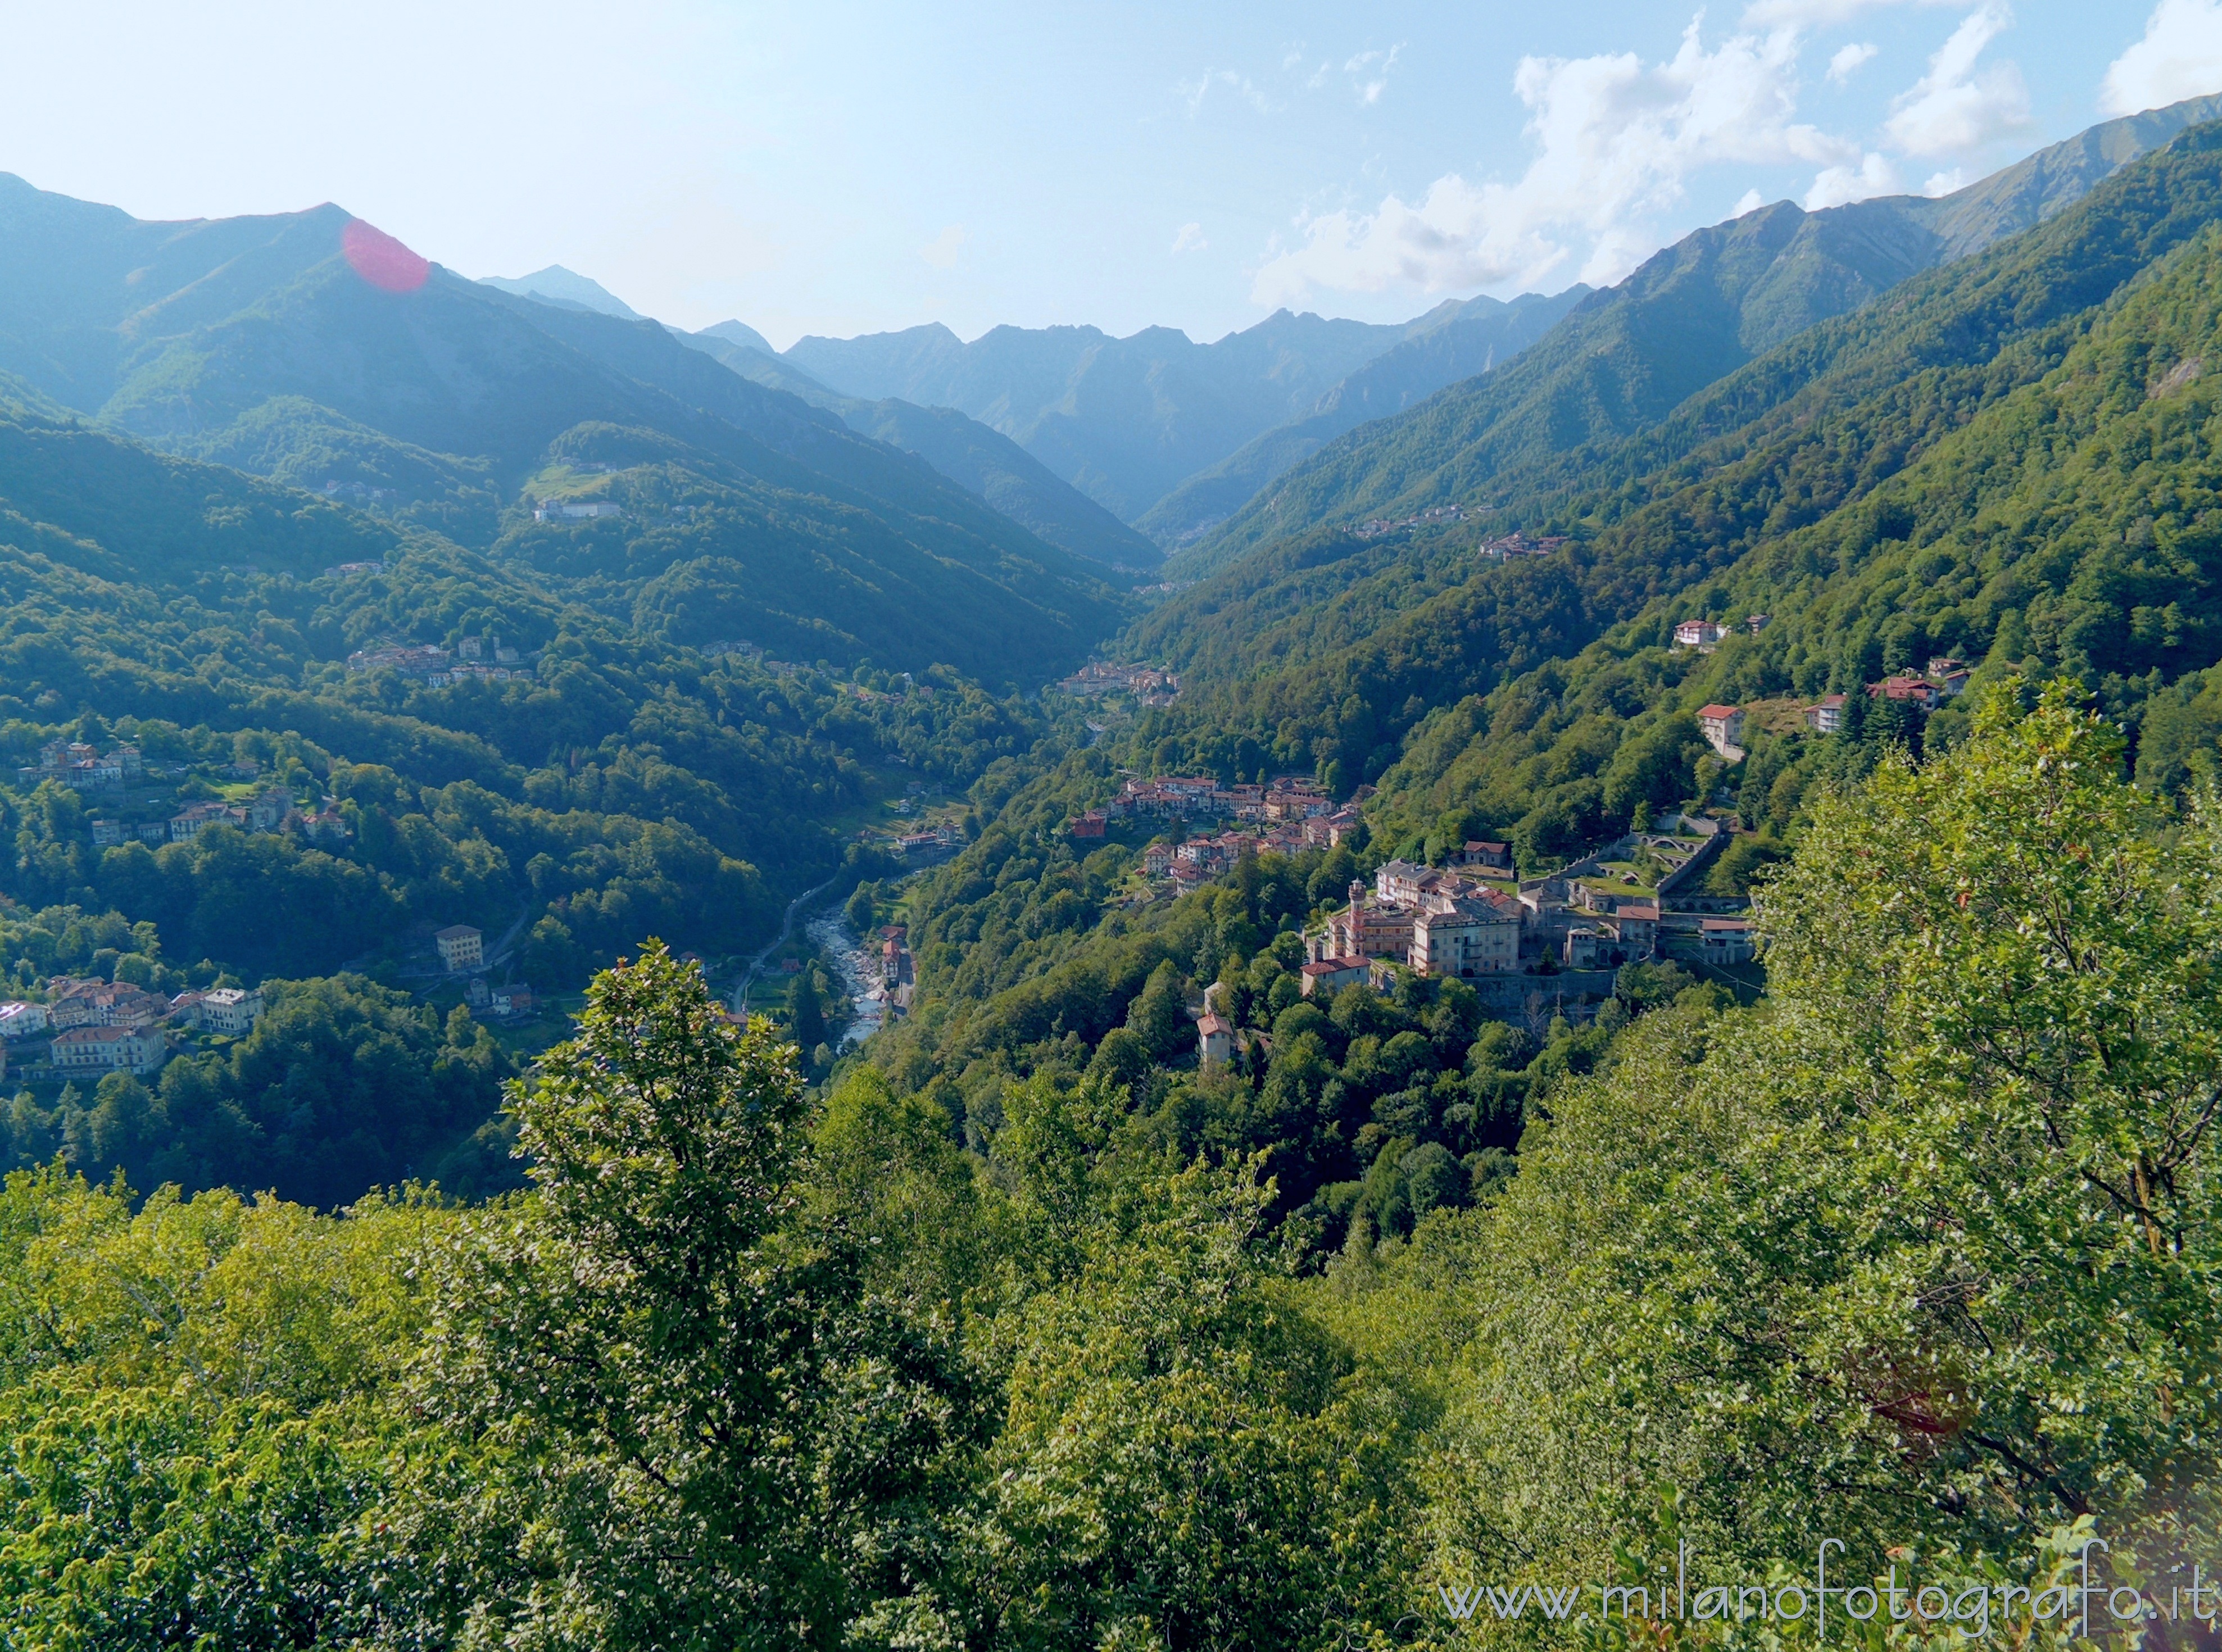 Oriomosso (Biella, Italy): Sight from the Pila Belvedere toward the Upper Cervo Valley - Oriomosso (Biella, Italy)